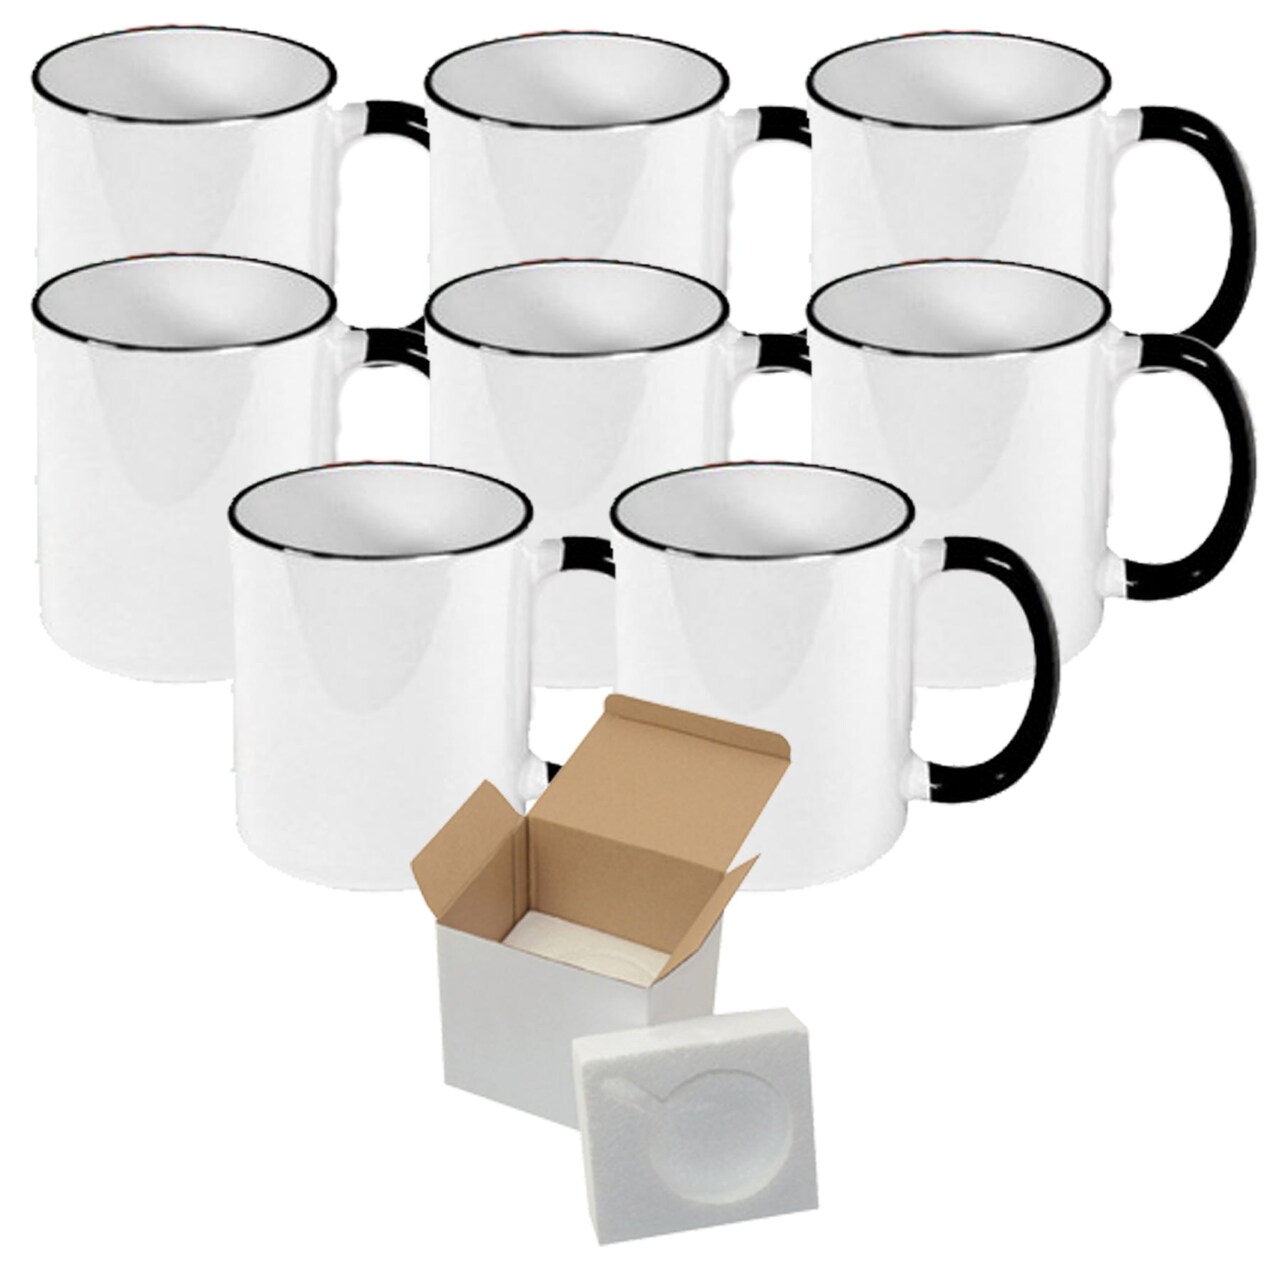 8 PCS 11OZ Sublimation Mug Coated Ceramic Mugs White Black Halo With Black  Handle Sublimation Blanks Mugs for Coffee Milk Tea